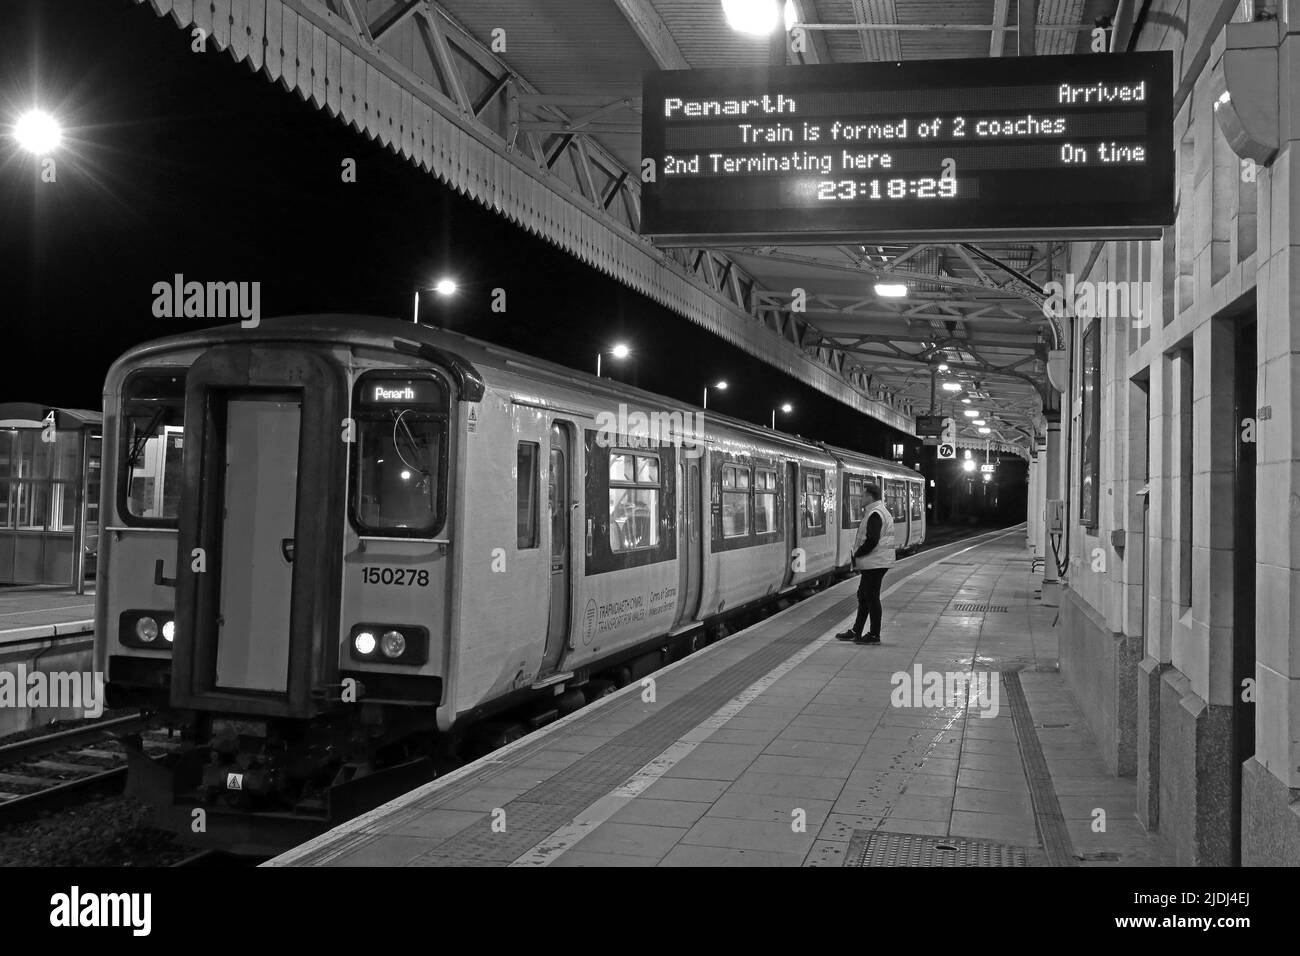 Cardiff Central Platform 6b, dernier train TFW de nuit, à Barry Island, Cardiff Central, Central Square, Cardiff, PAYS DE GALLES, ROYAUME-UNI, CF10 1EP Banque D'Images